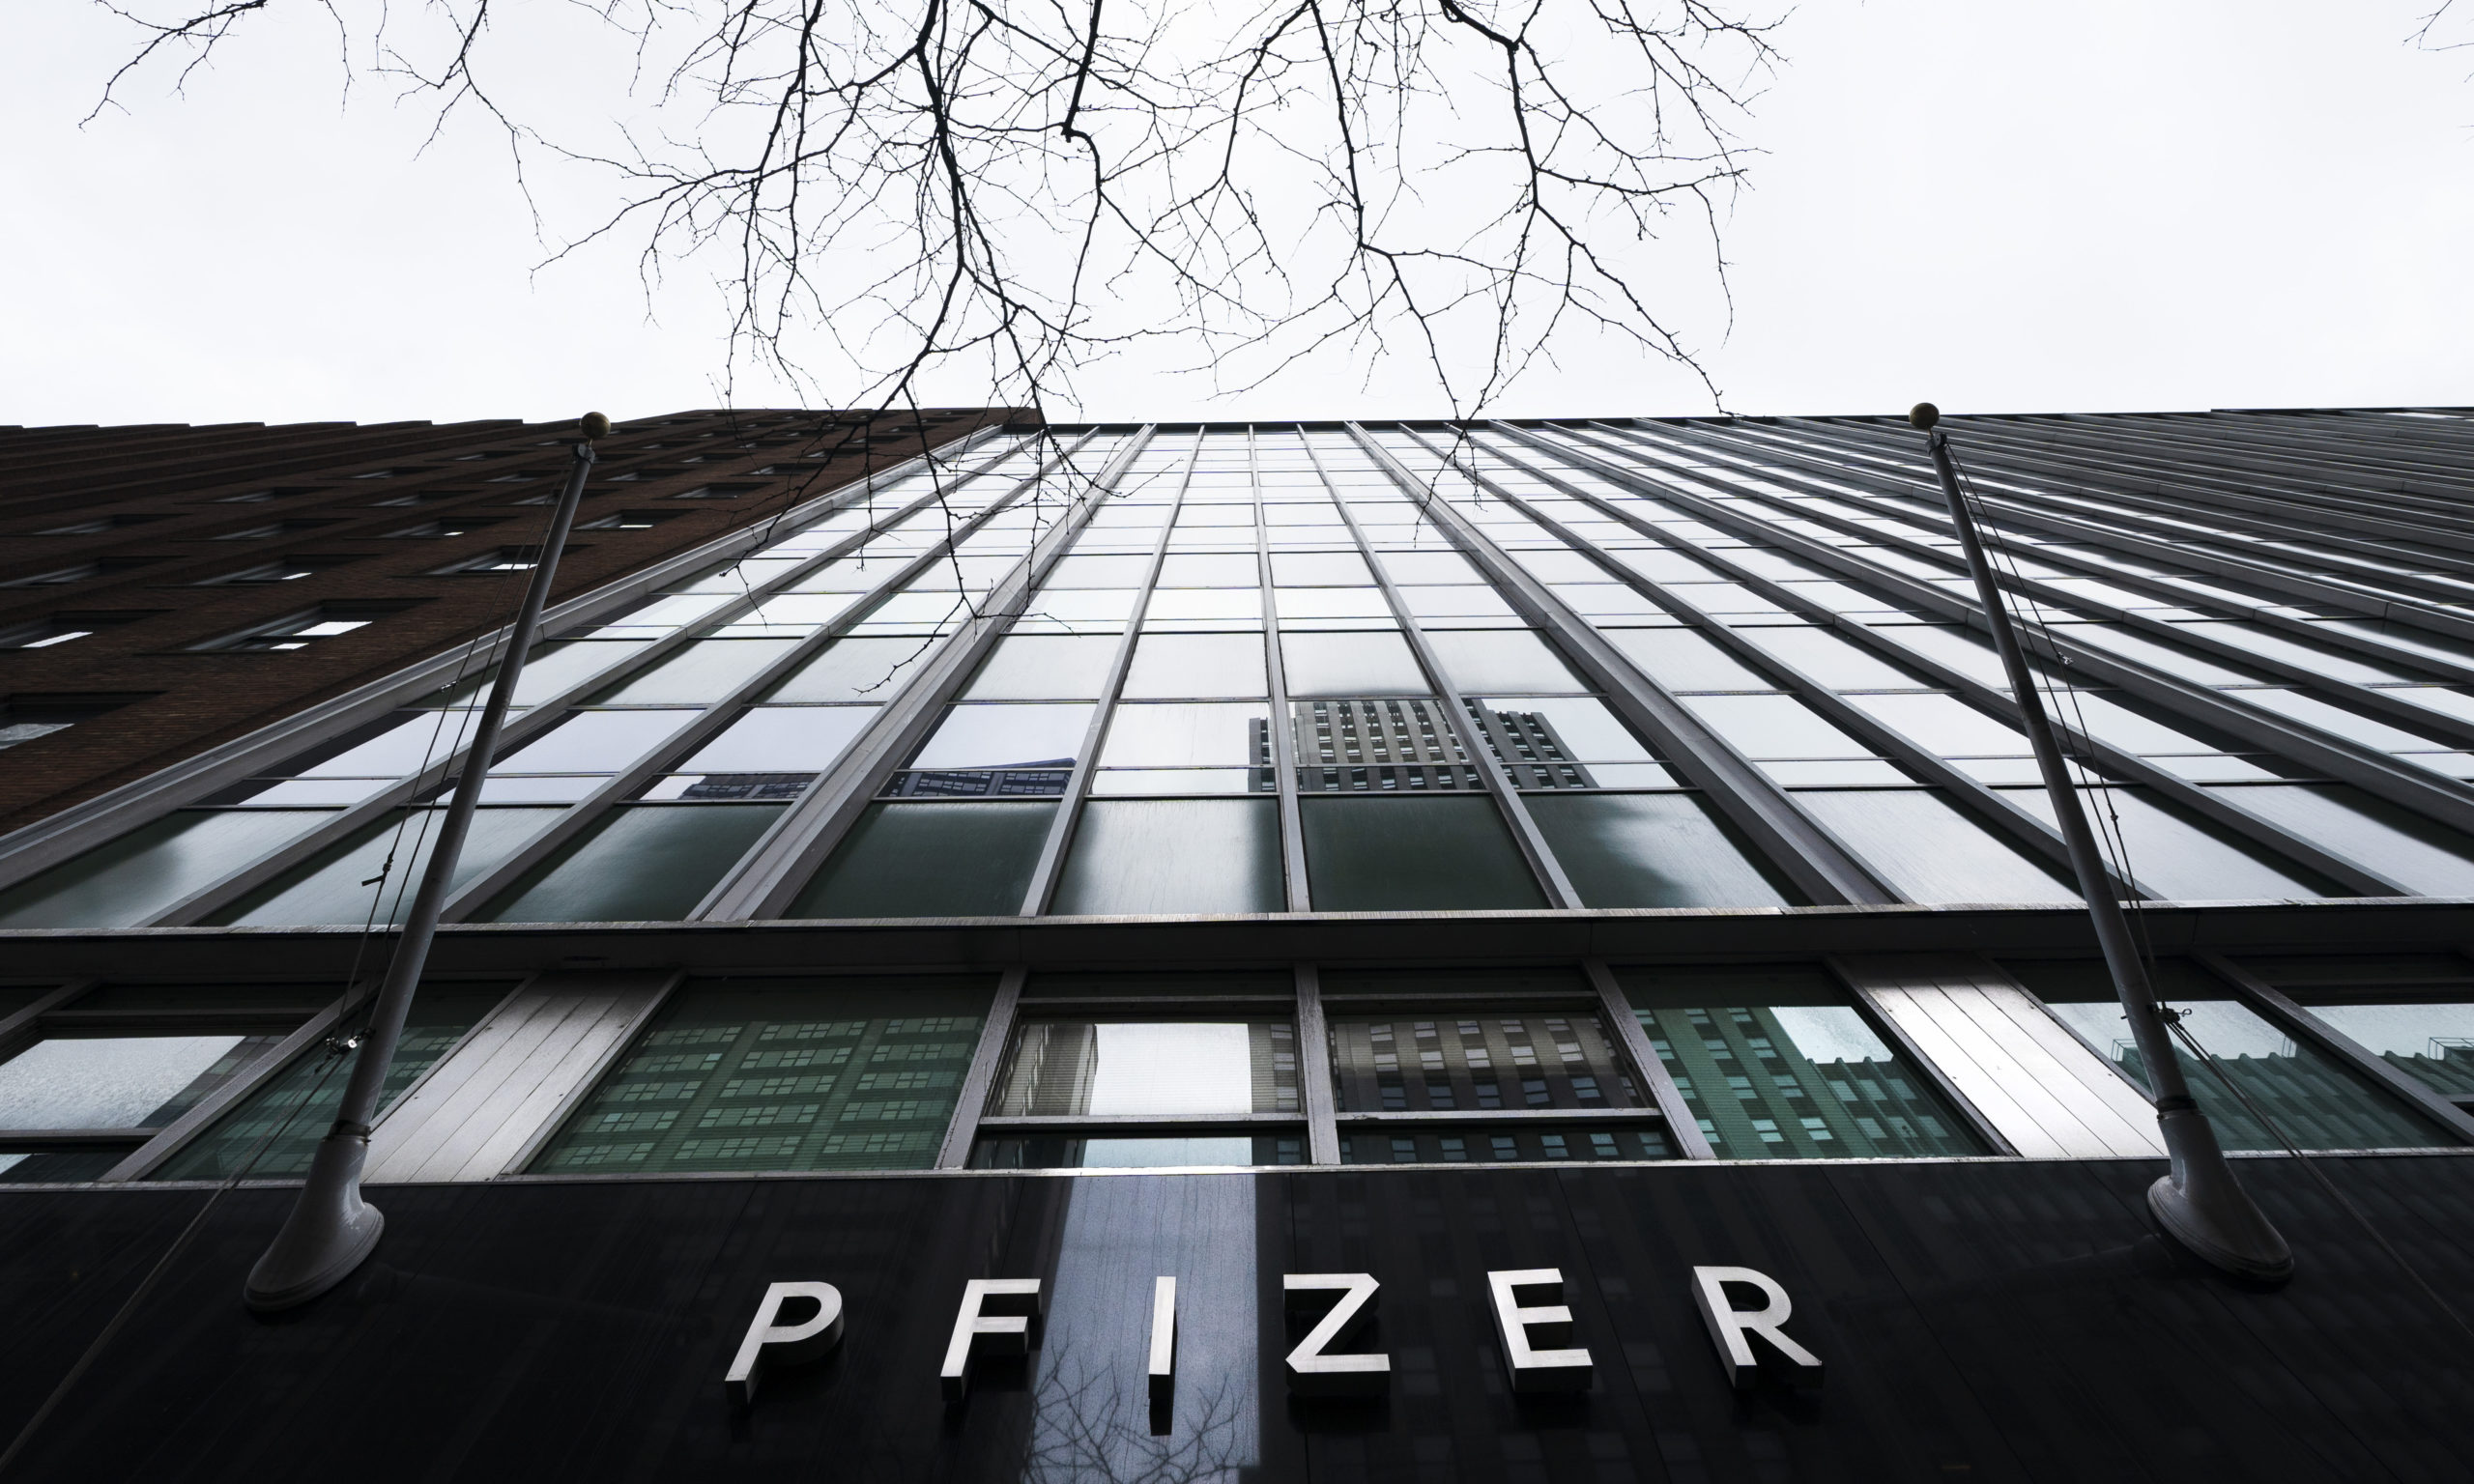 Ιταλία: Για ενδεχόμενη φοροδιαφυγή ελέγχεται η Pfizer – Για «απλούς ελέγχους» κάνει λόγο εκπρόσωπος της φαρμακευτικής